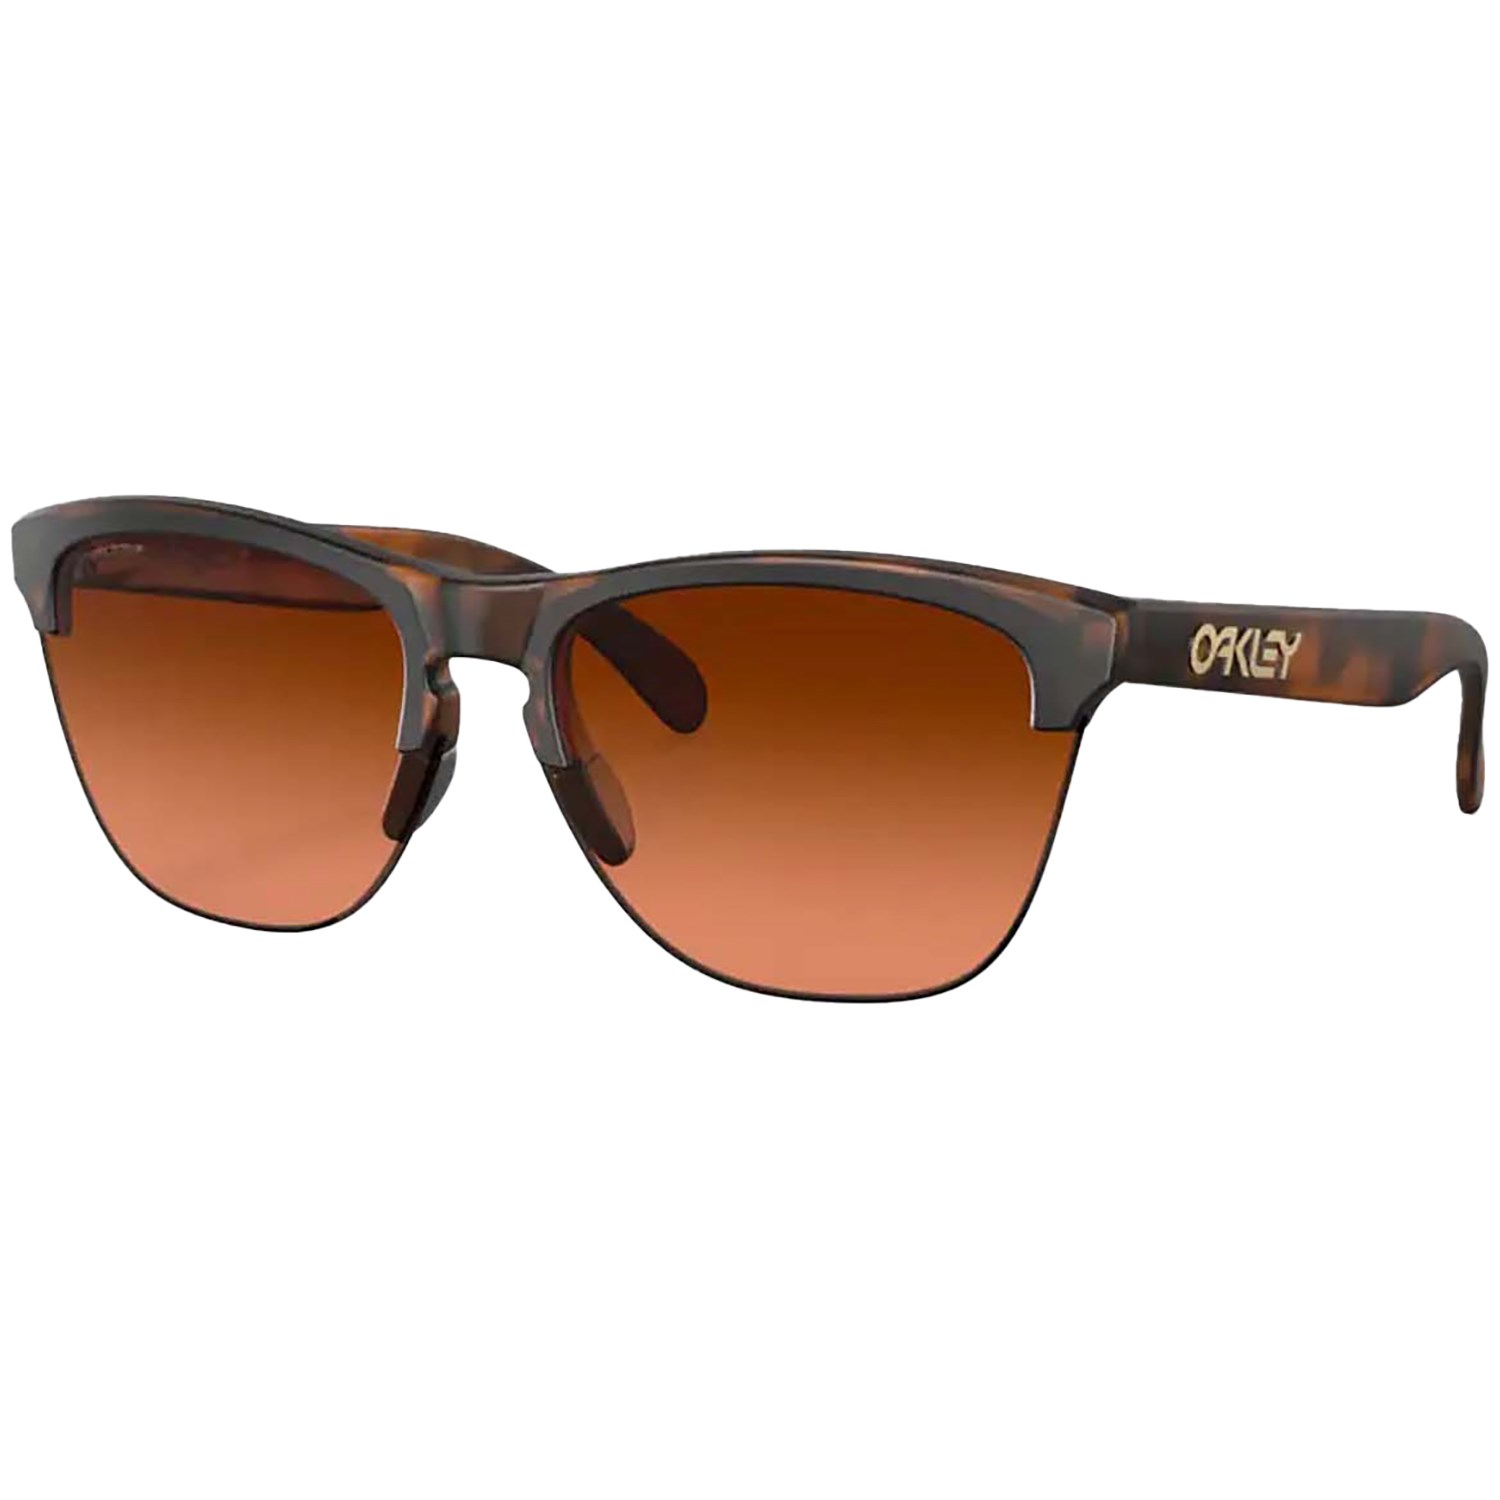 цена Солнцезащитные очки Oakley Frogskins Lite, коричневый